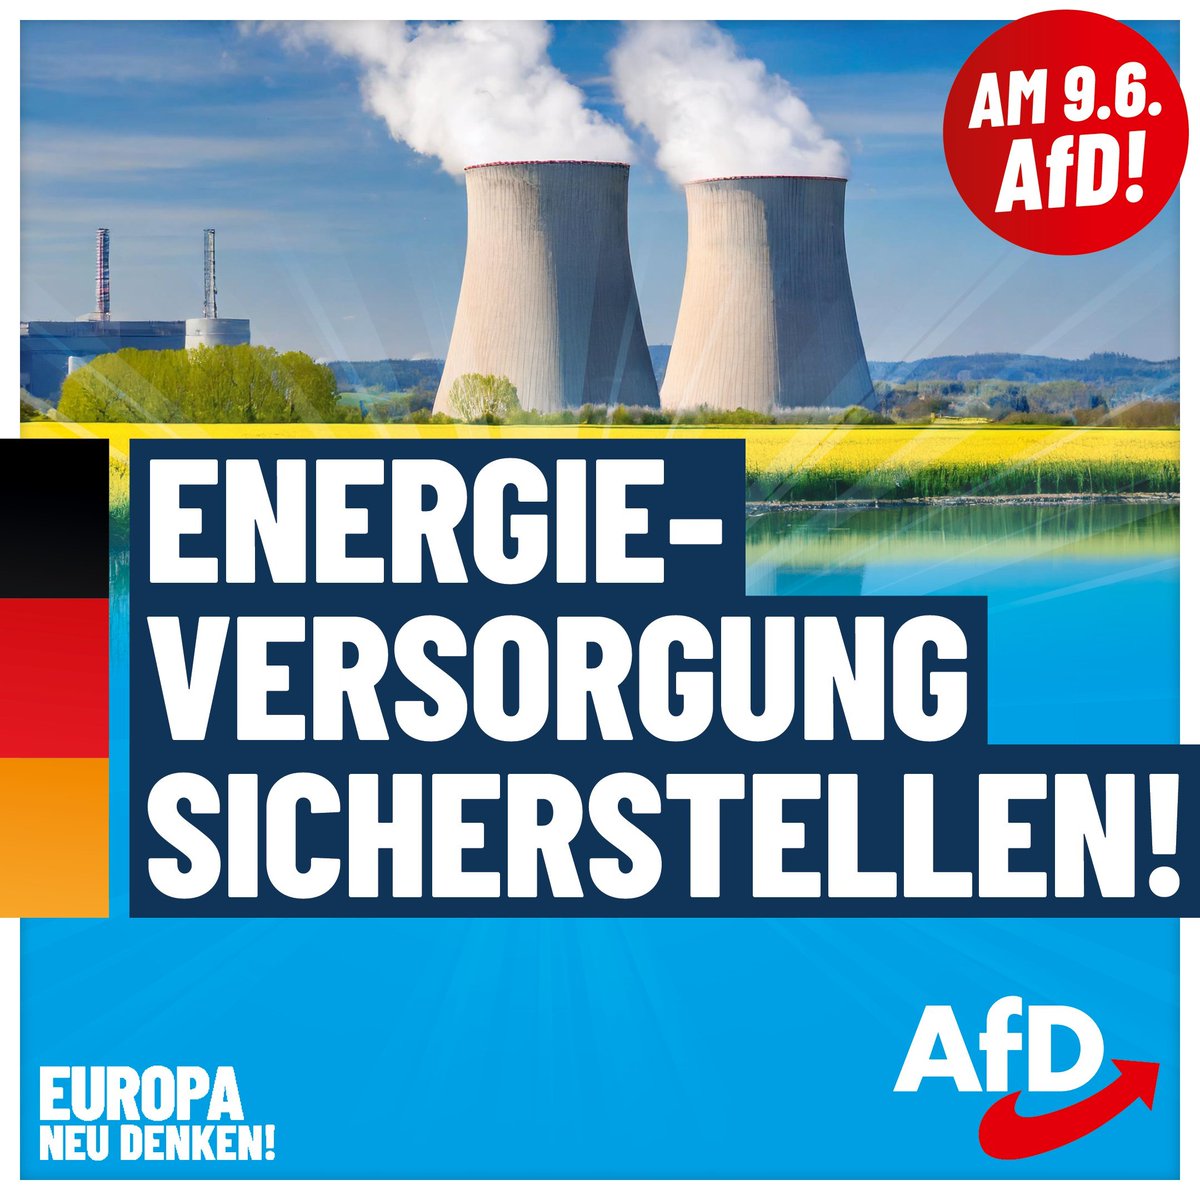 Ich finde sehr gut, dass die AfD sich für einen ausgewogenen Energiemix einsetzt, der Kernkraft nicht ausschließt.
Europawahl am 9. Juni 2024
#IchwaehleAfD  #nurnochAfD
#Deutschlandabernormal  #AfD  💙